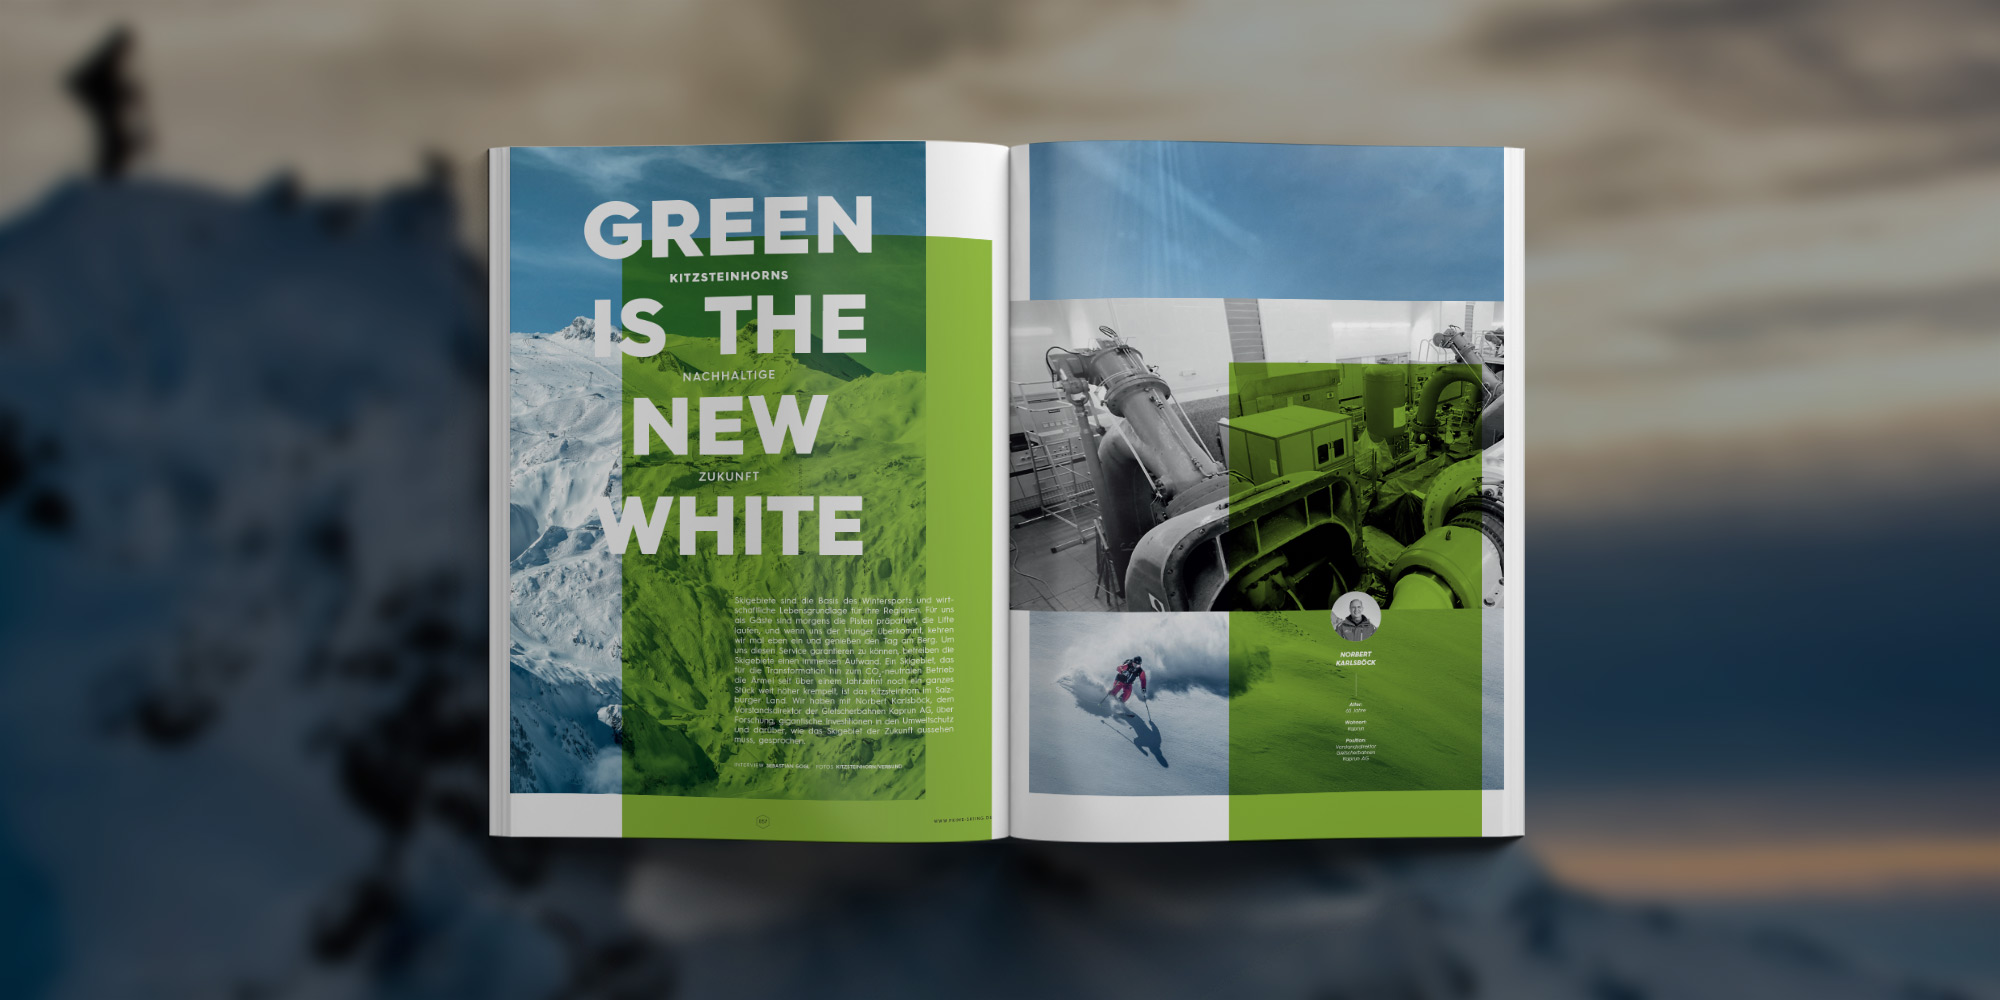 PRIME Skiing #34 - Artikel Highlights: Green is the new White - Kitzsteinhorns nachhaltige Zukunft